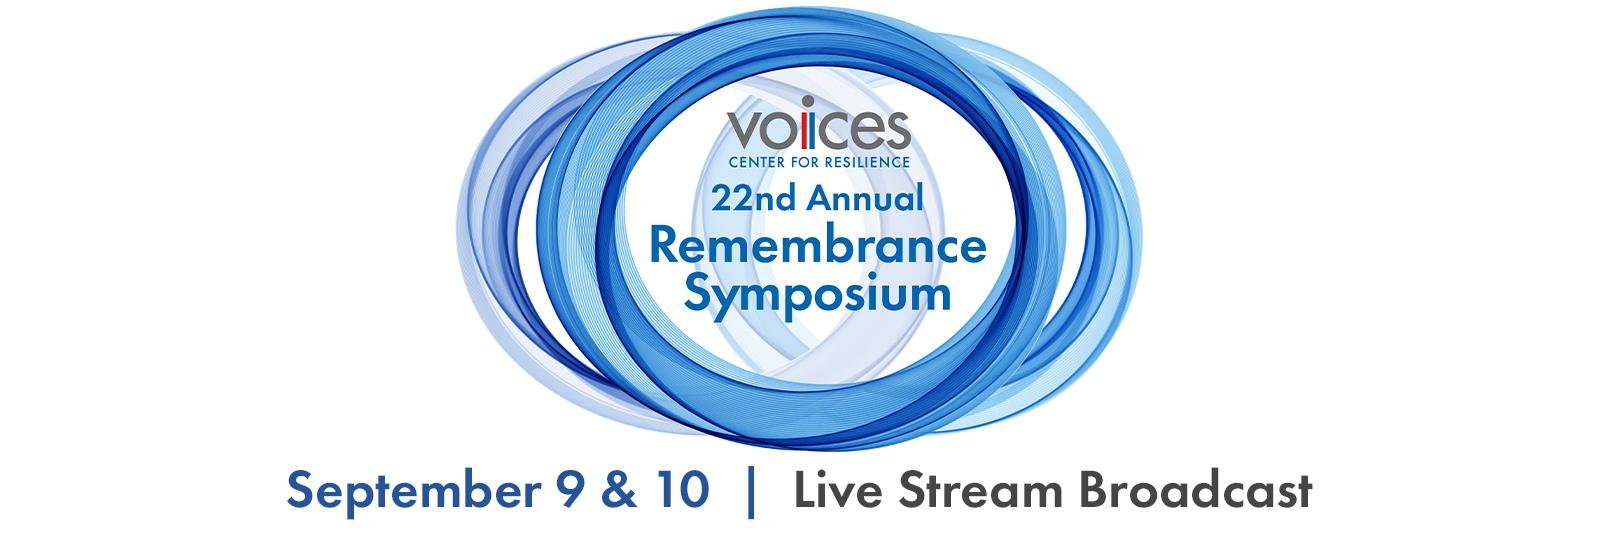 Voices Symposium